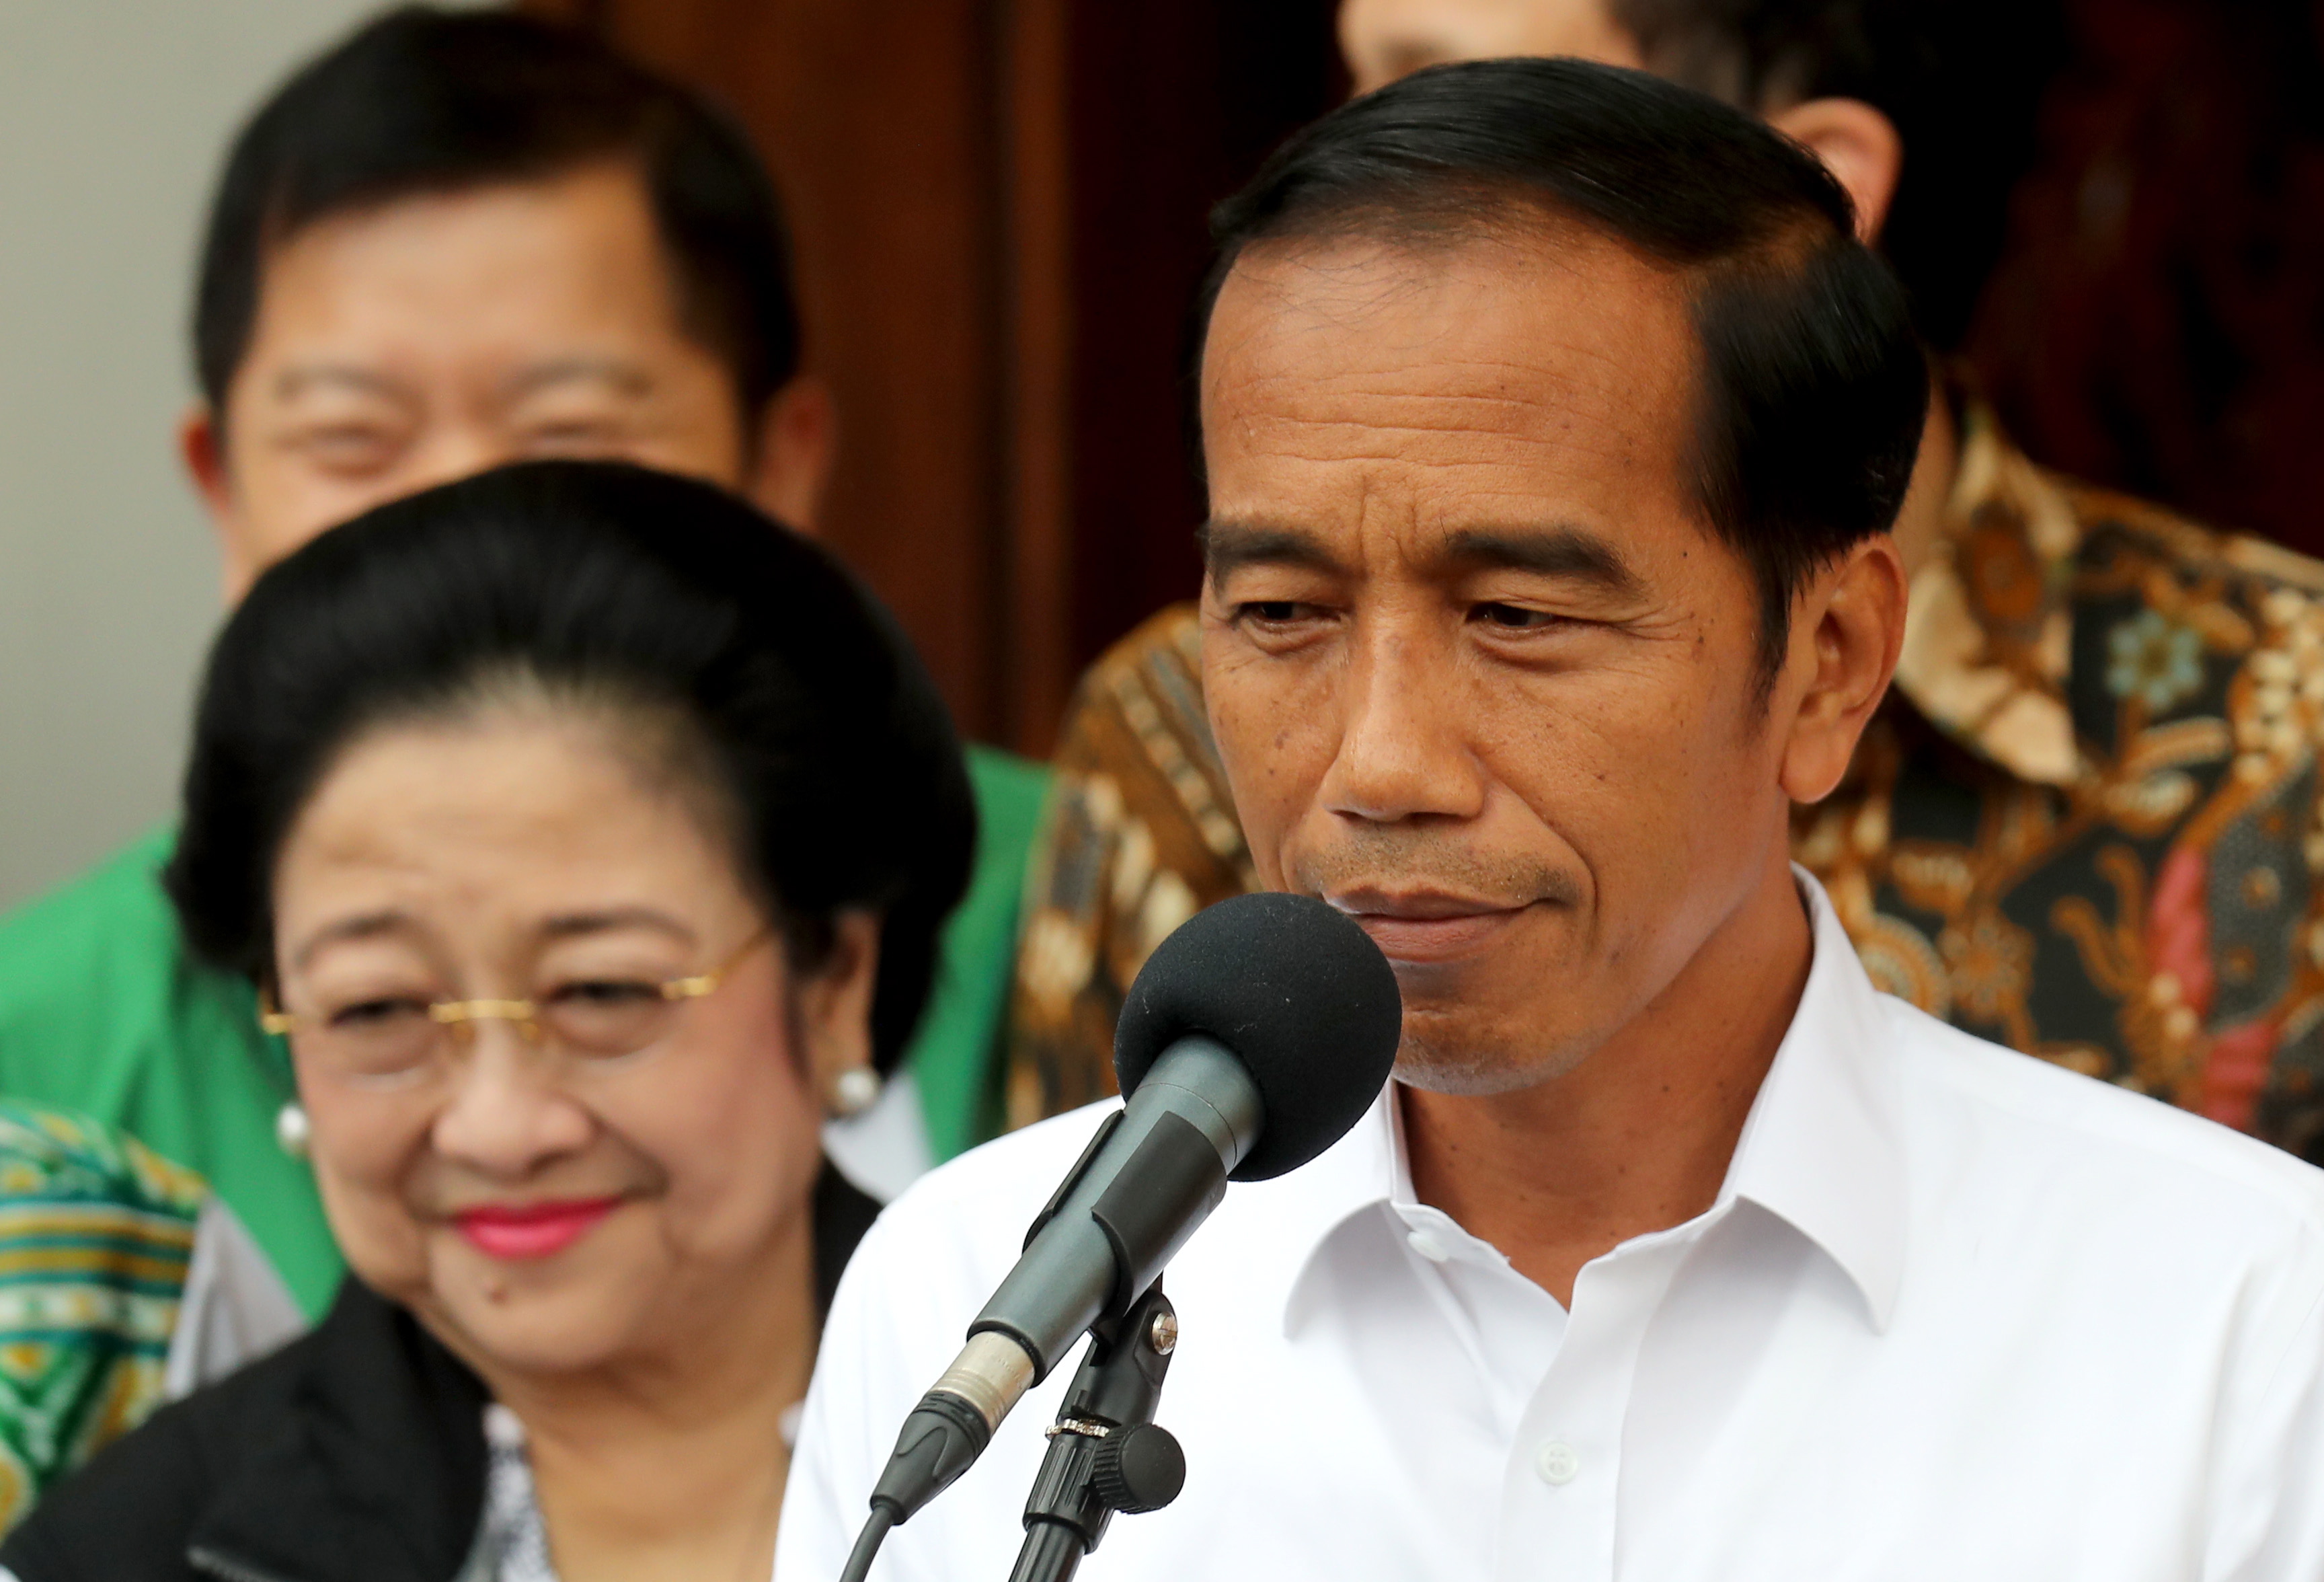 印尼现任总统佐科·维多多宣布赢得连任